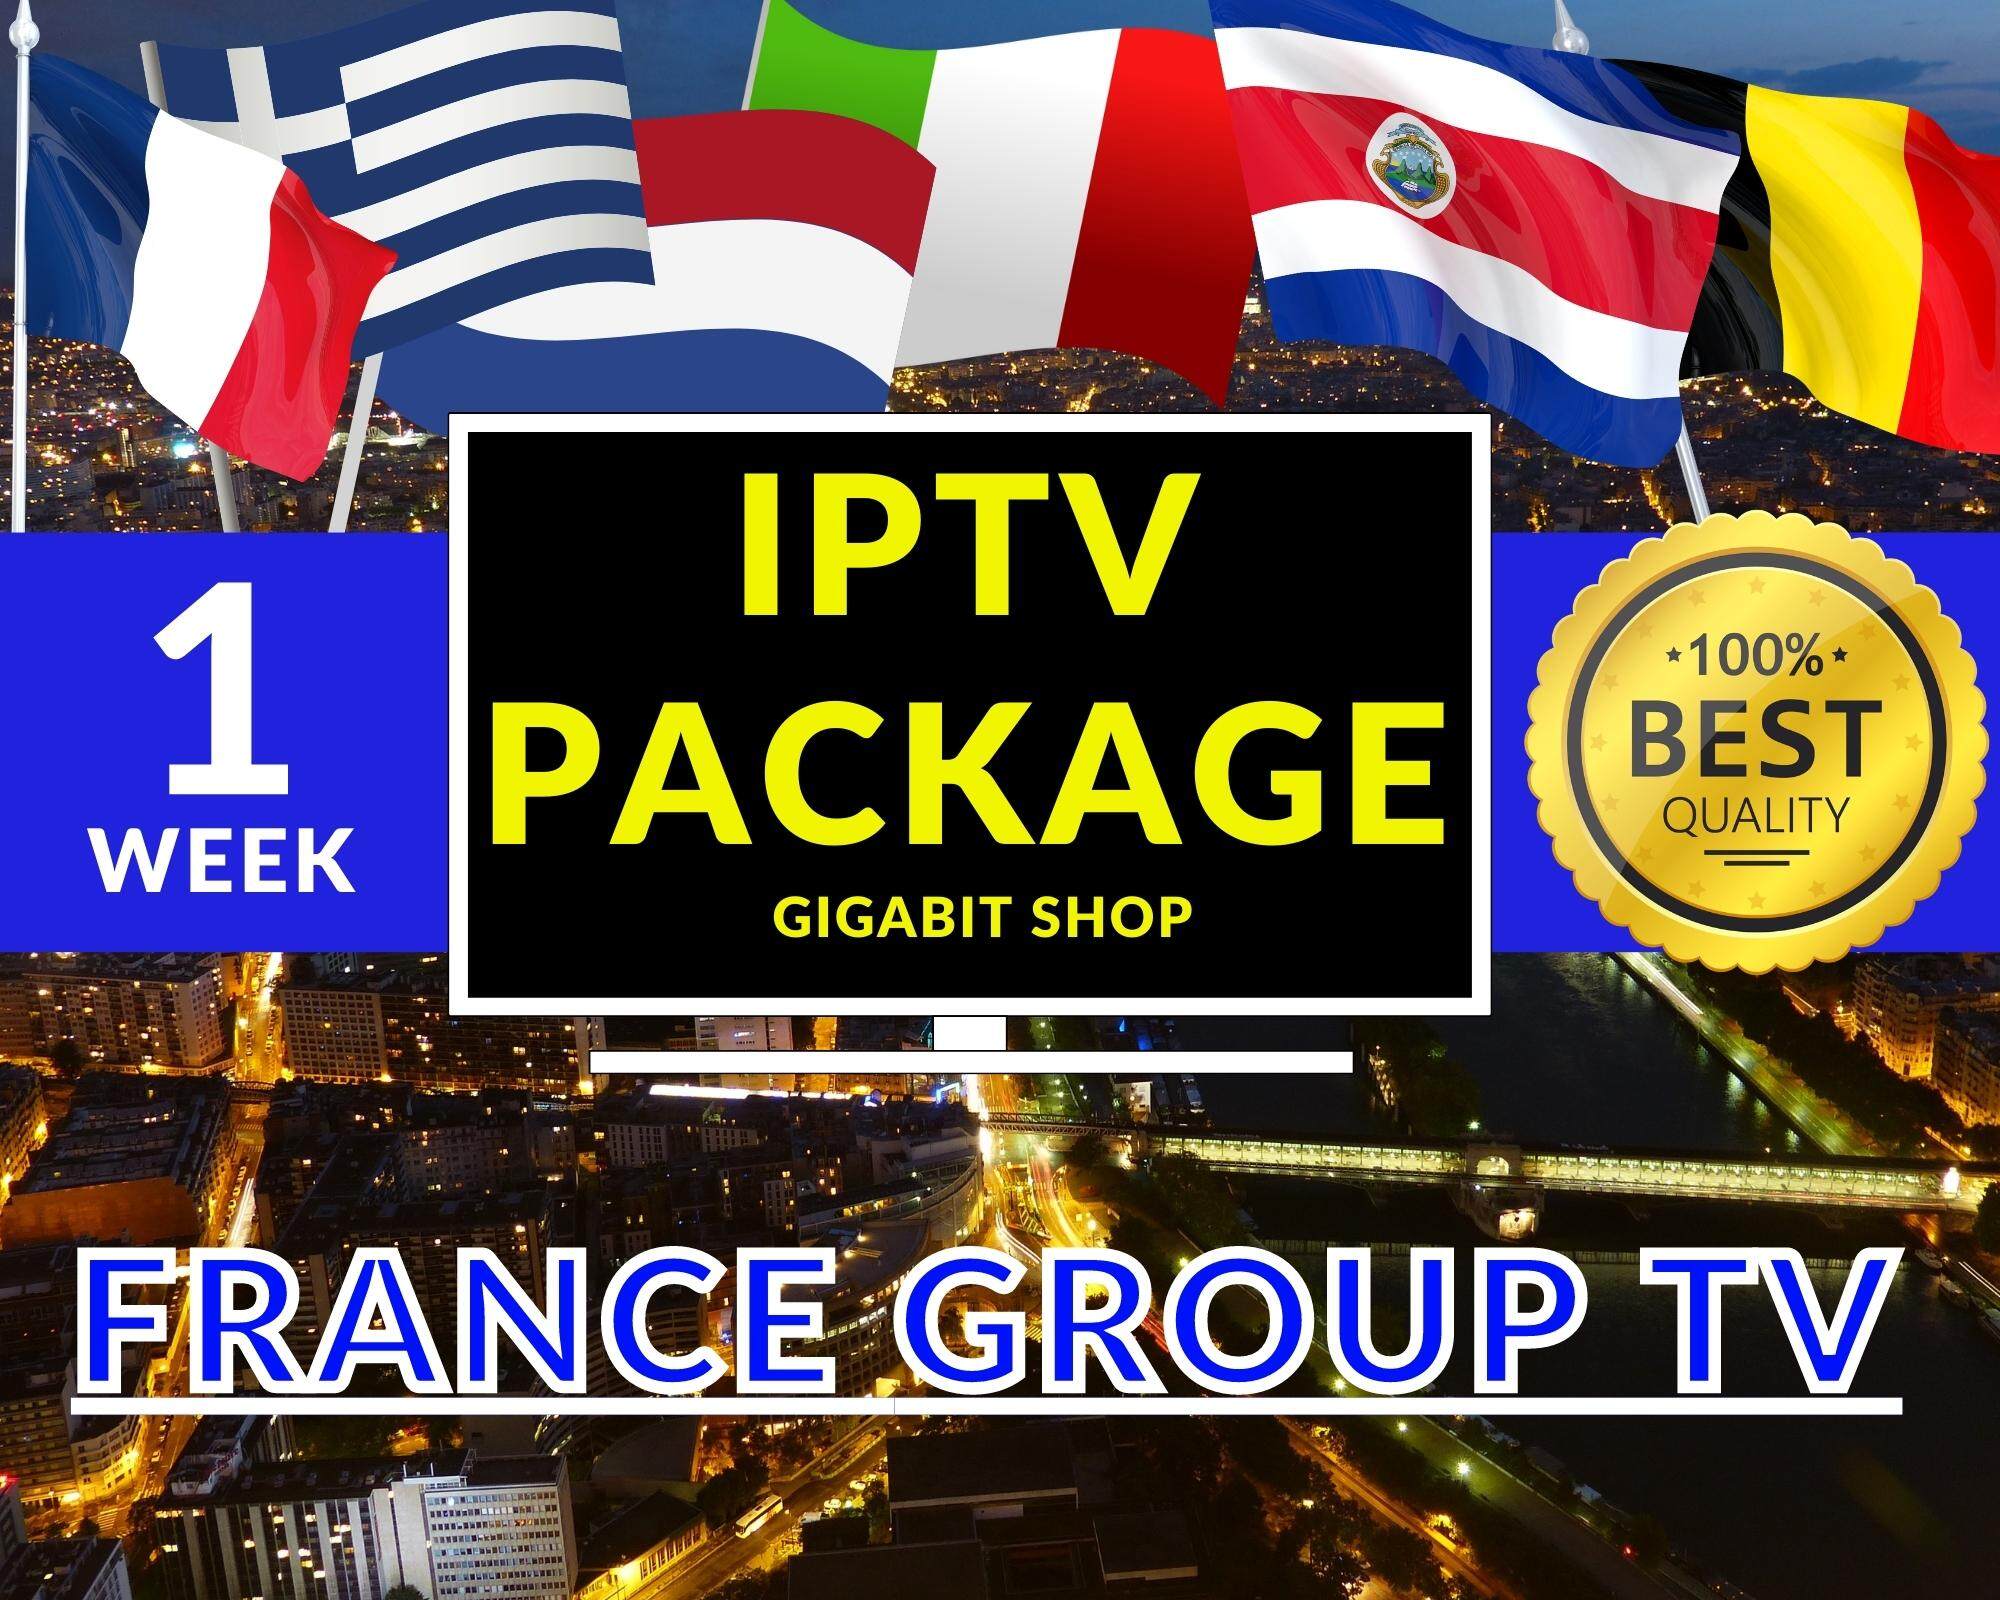 Package #1 Week IPTV France Group. รับชมทีวีออนไลน์ ได้ง่ายๆผ่านApp เพียงแค่ใช้ อินเตอร์ เน็ต ก็สามารถรับชมได้ทุกที่  ทุกเวลา ความคมชัดระดับ  4K